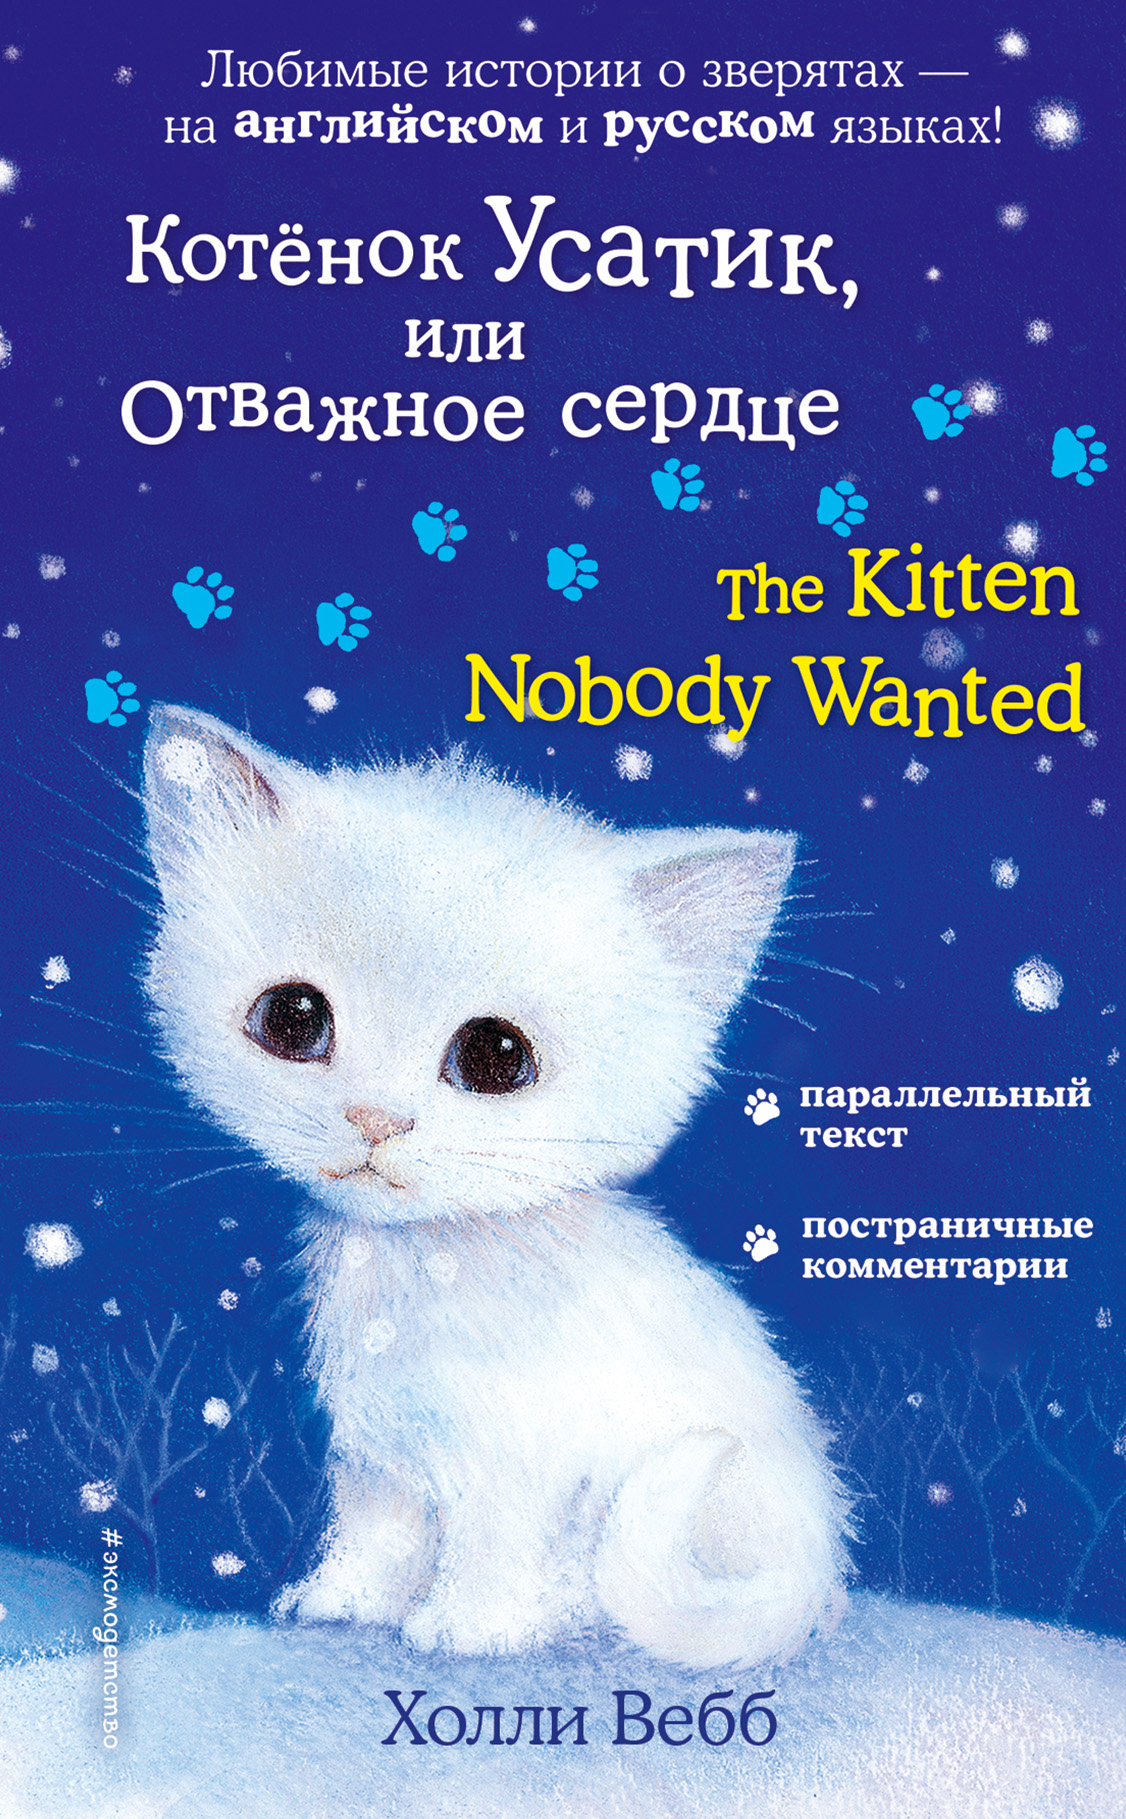 Котёнок Усатик, или Отважное сердце \/ The Kitten Nobody Wanted